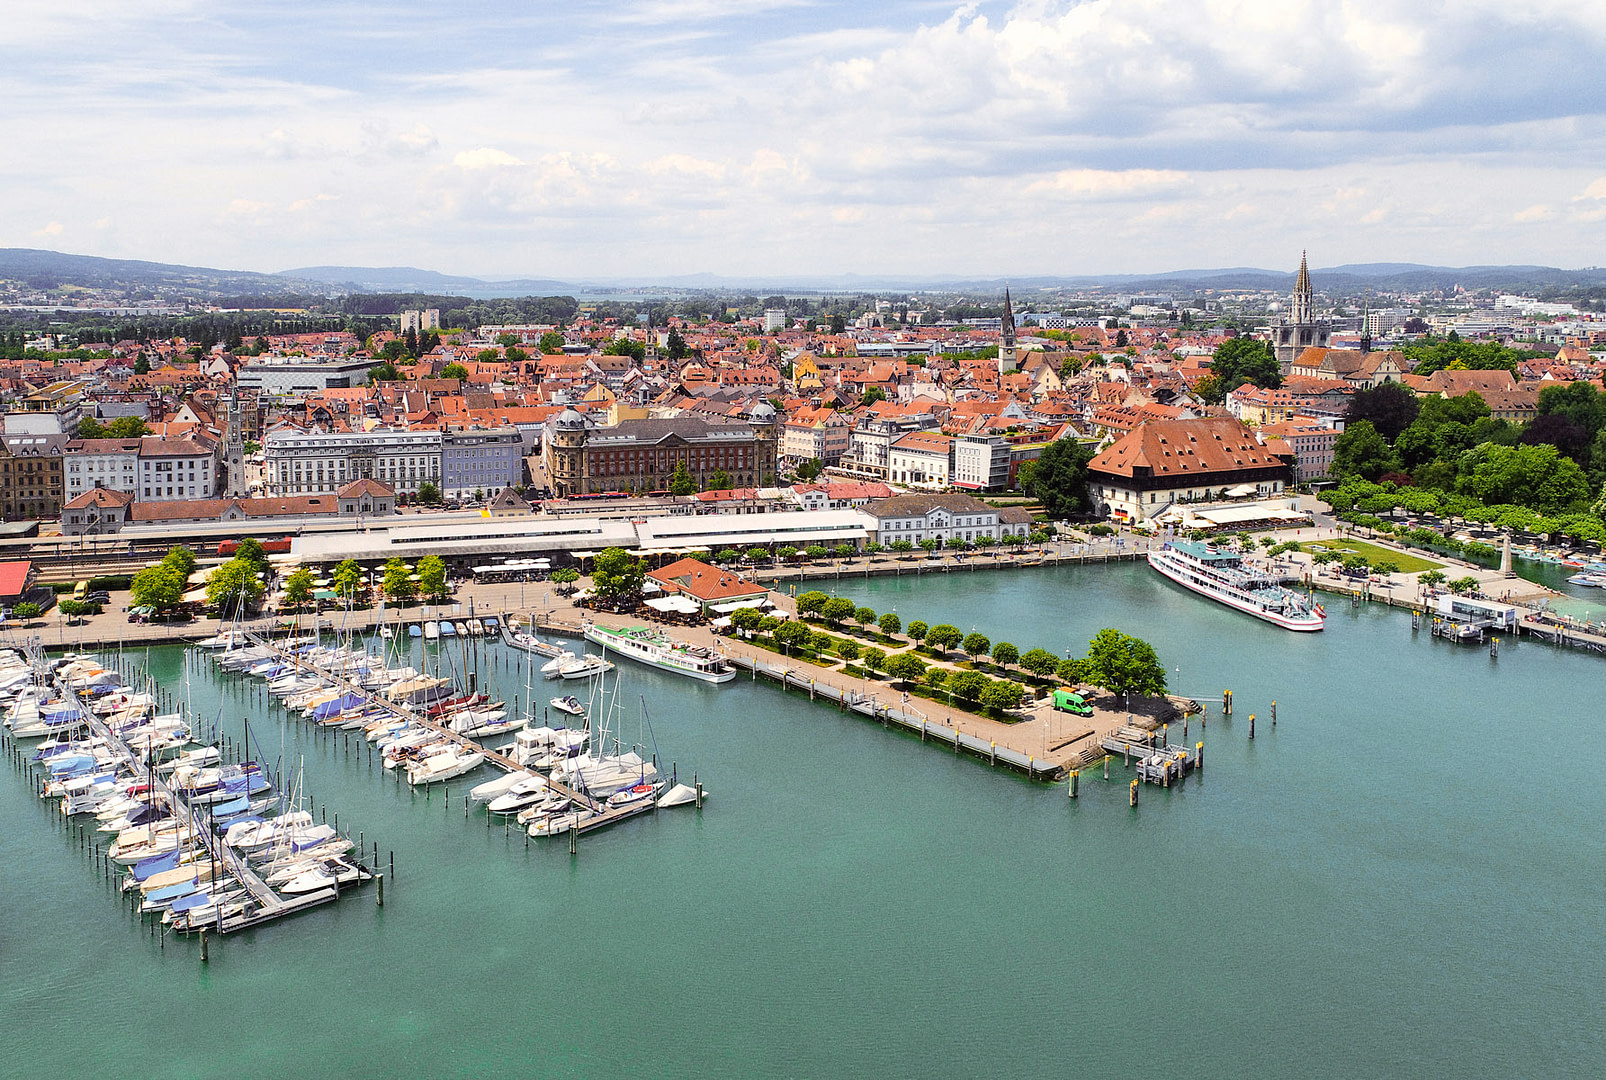 Luftbildaufnahme der Seniorenresidenz Konstanz